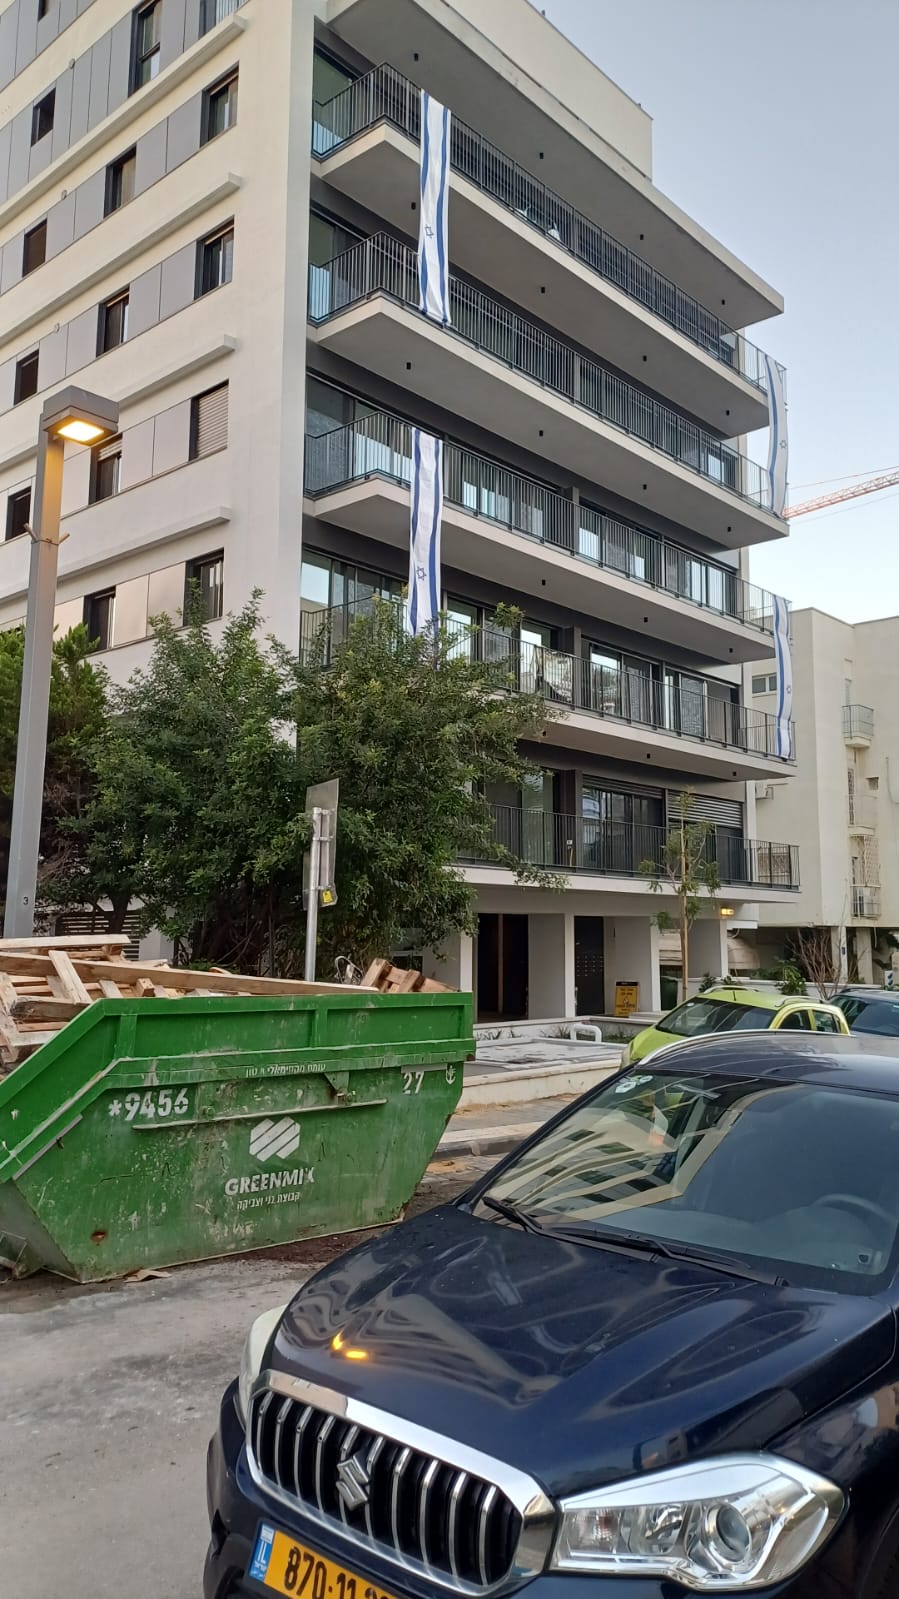 דירות חדשות למכירה בתל אביב